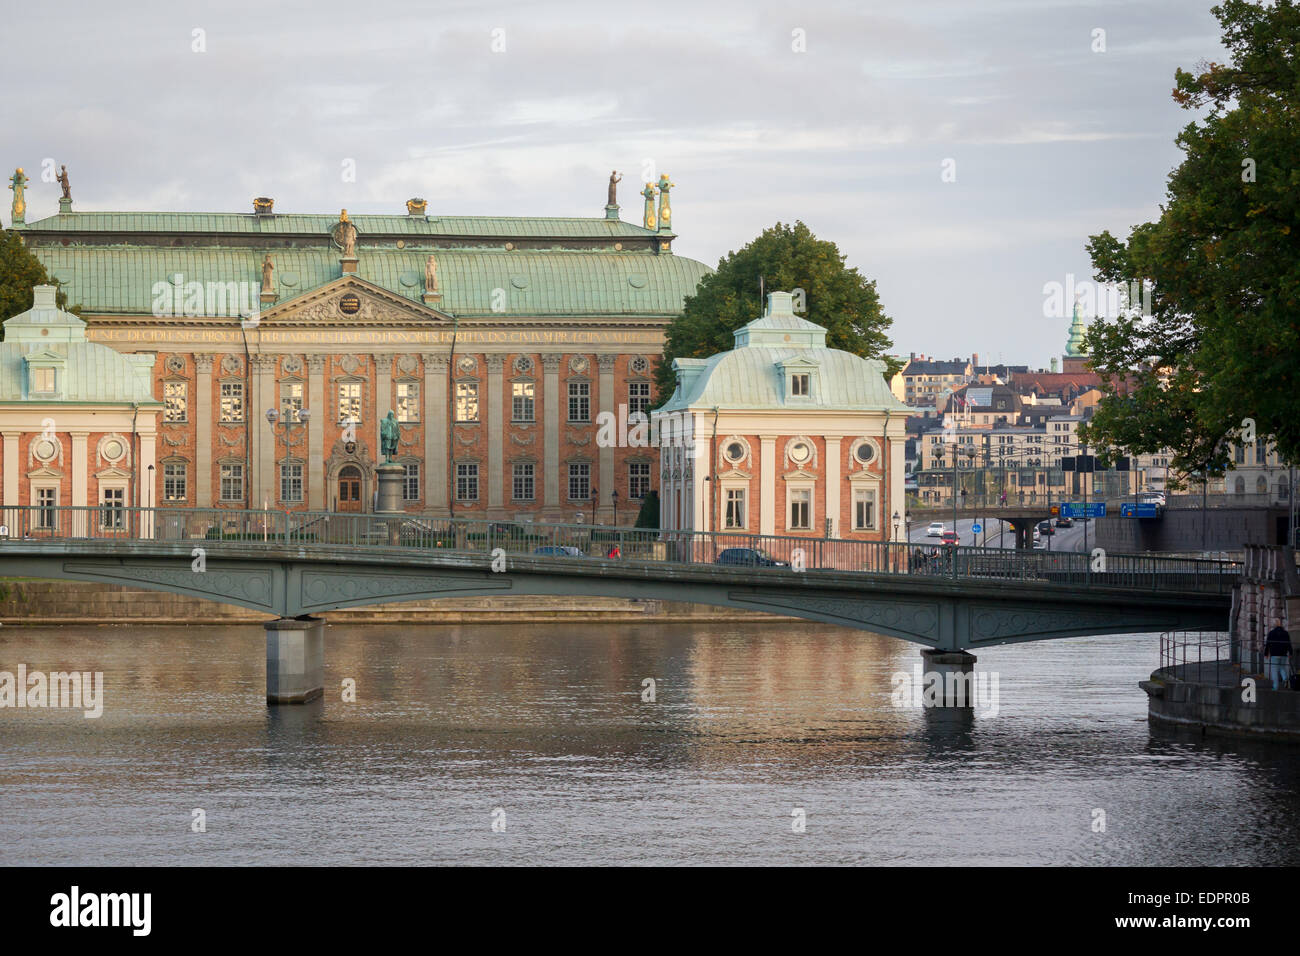 Avis de Riddarhuset (La Maison de noblesse, traduction littérale Chambre des Chevaliers) à Stockholm, Suède Banque D'Images